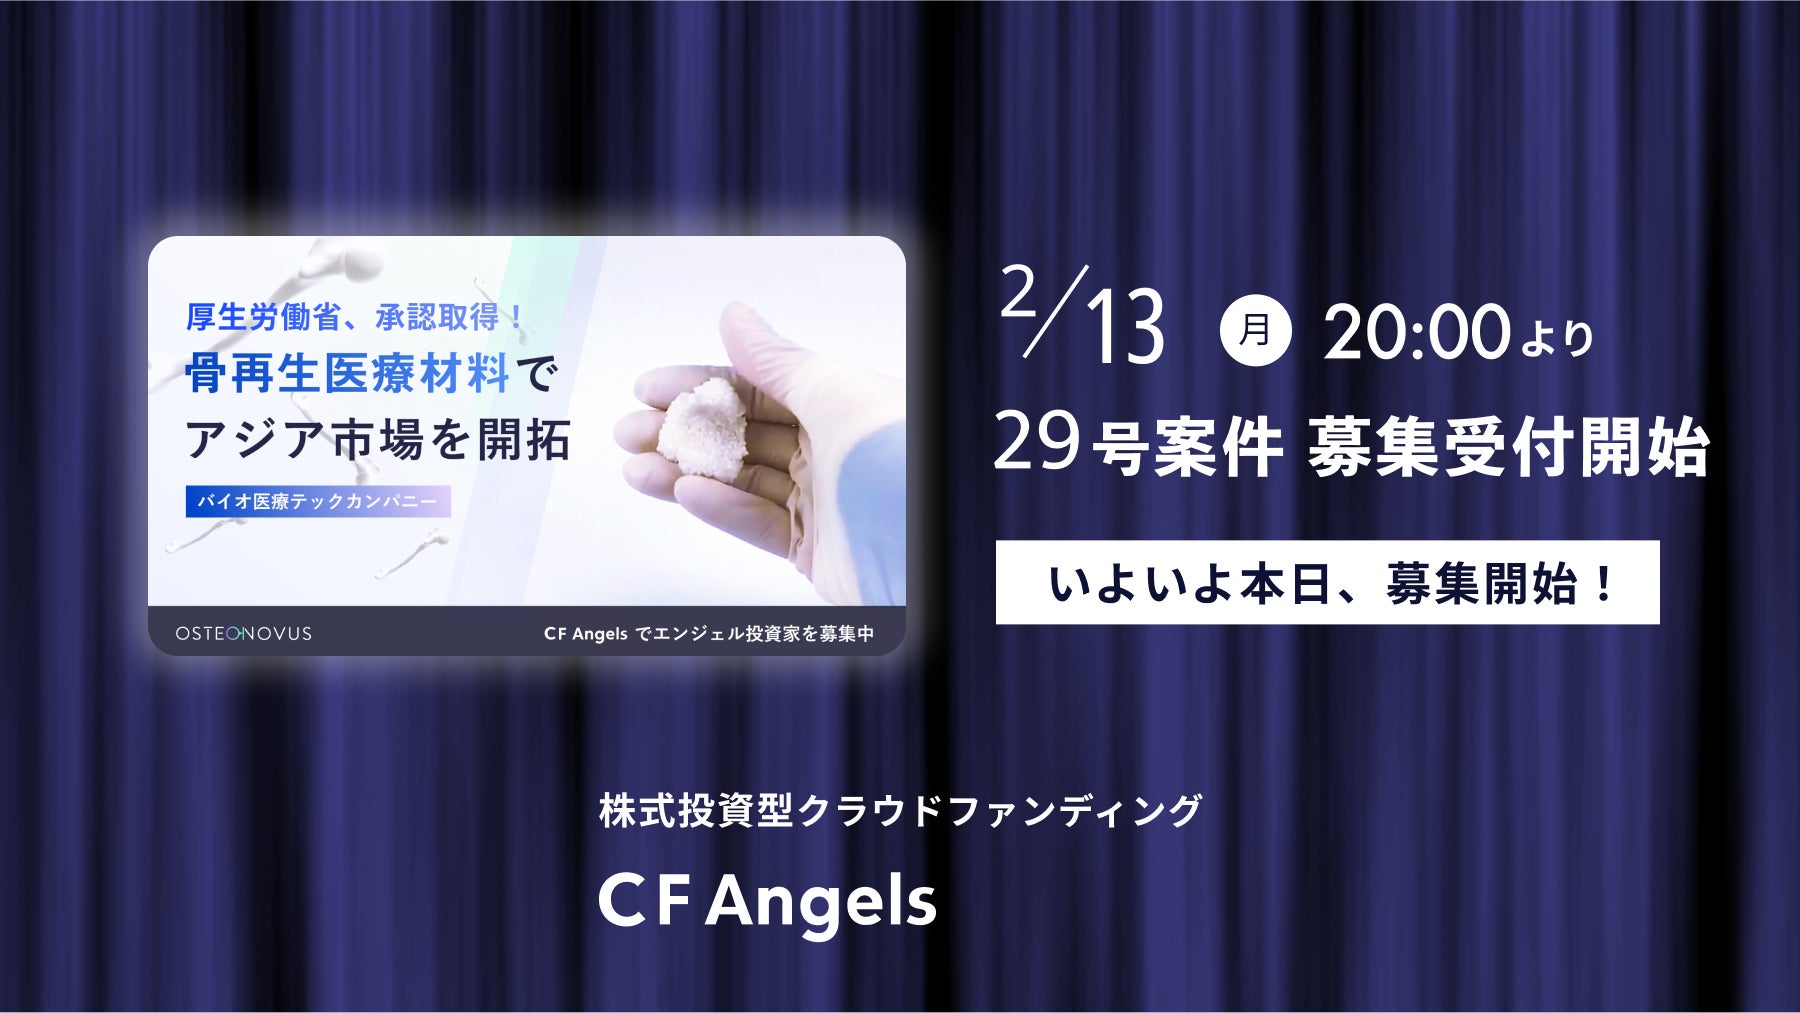 株式投資型クラウドファンディング「CF Angels」、本日2月13日(月) 20:00より第29号プロジェクト募集開始